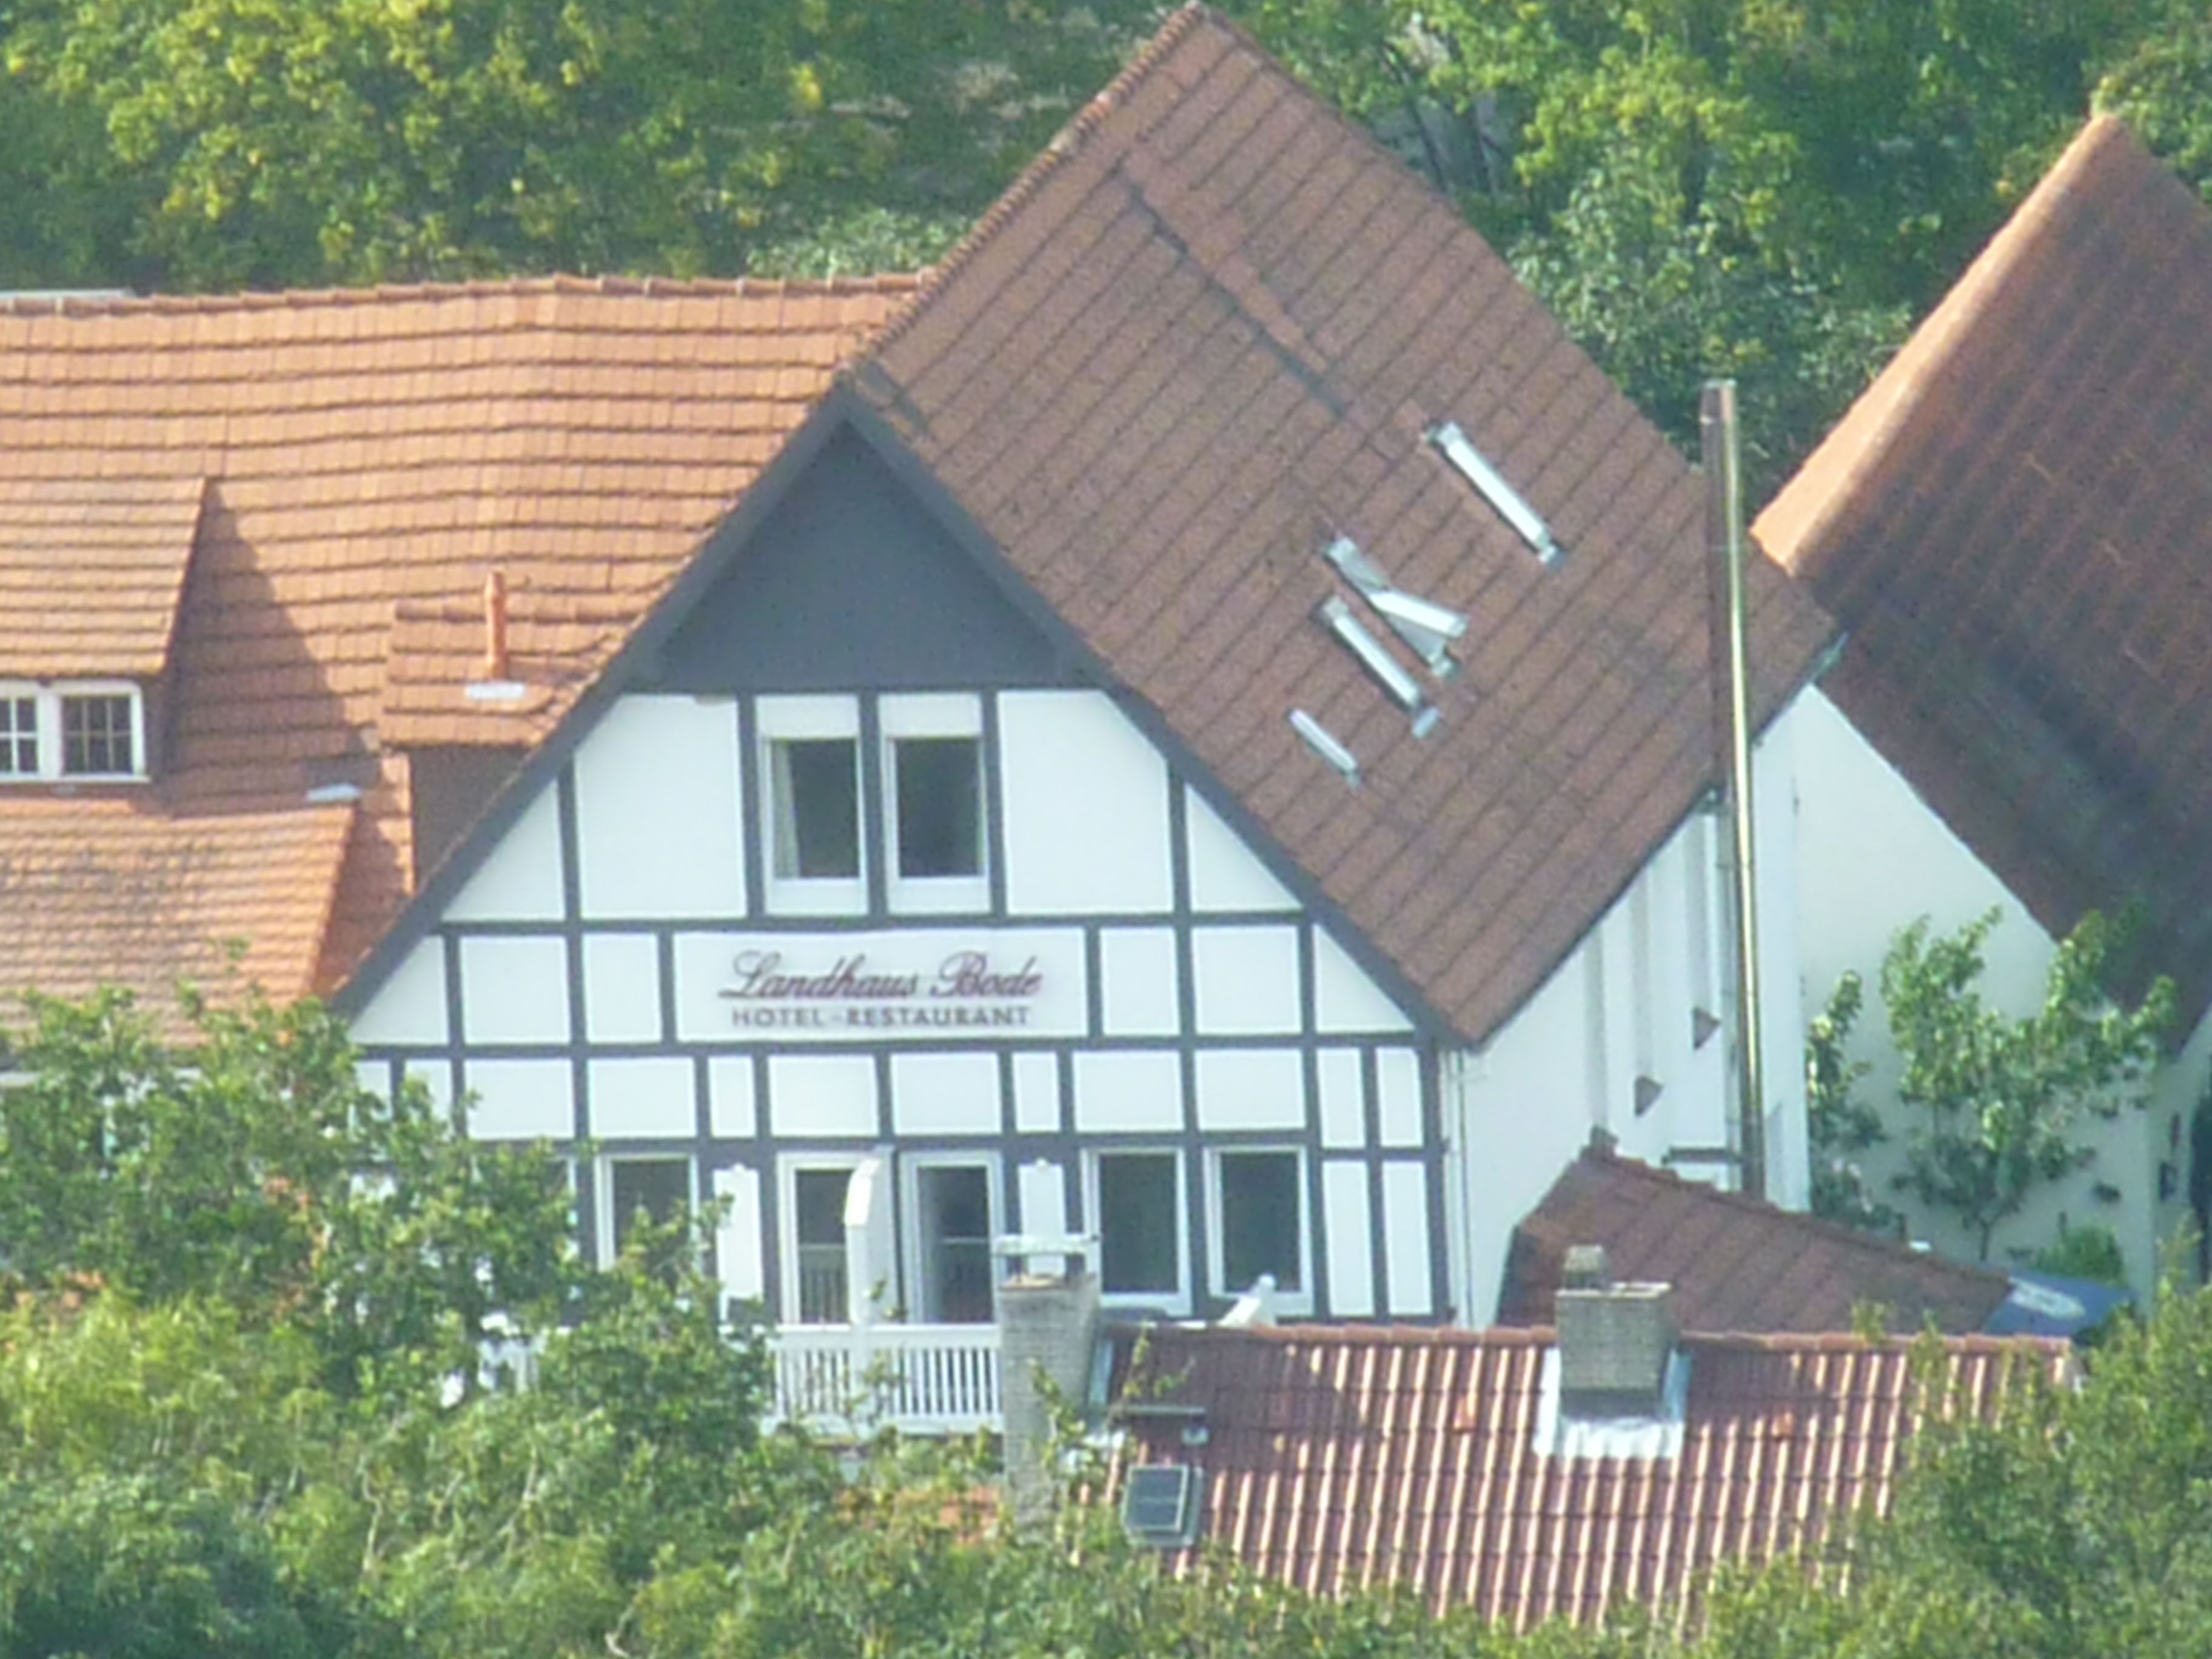 Landhaus Bode vom Hotel Maritim aus gesehen